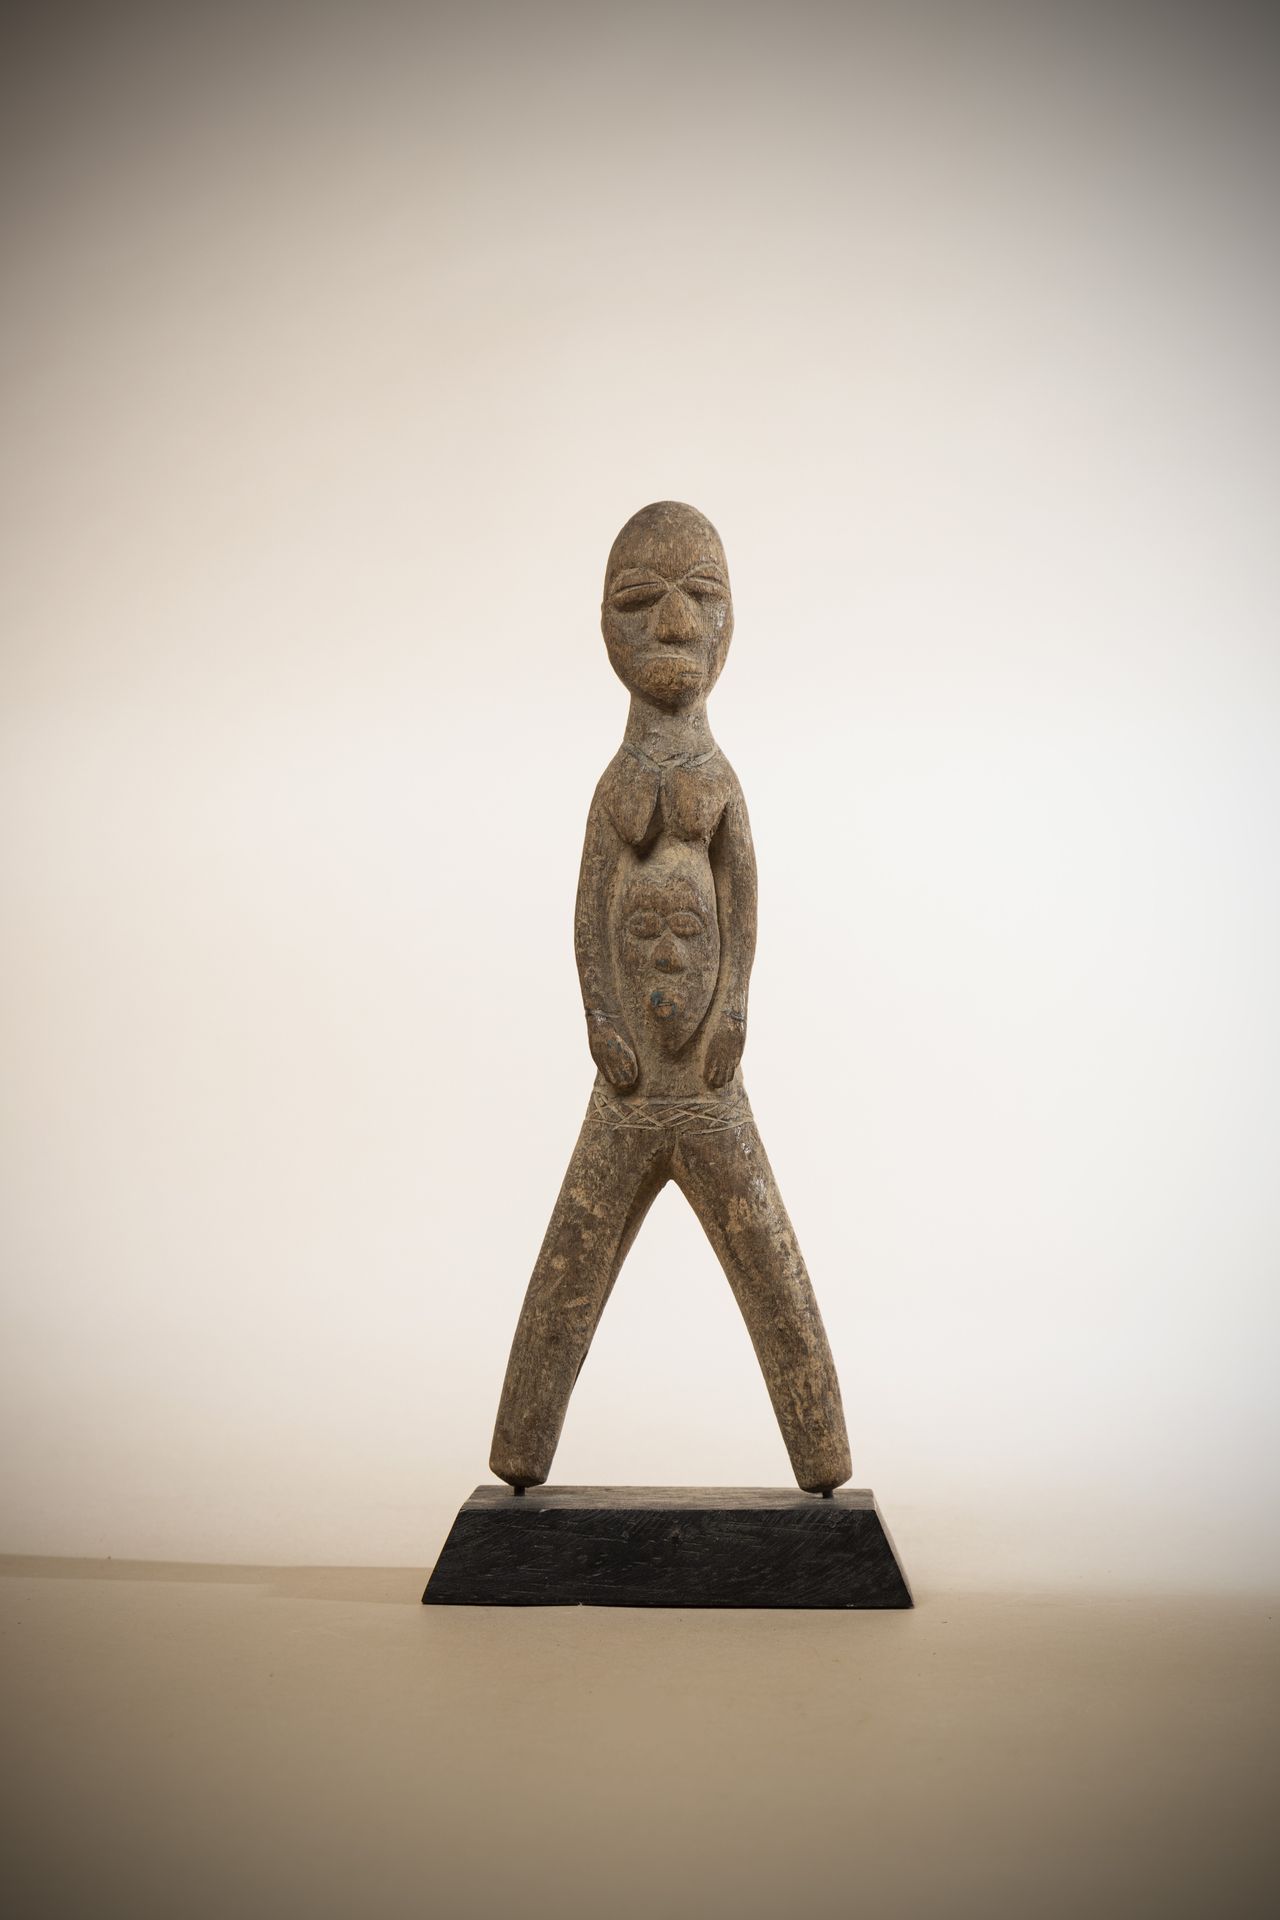 Null LOBI (布基纳法索)

代表腹部有脸的女性形象的石矛，古老的

泥土色泽

前阿兰-普罗沃特收藏

高度：22厘米